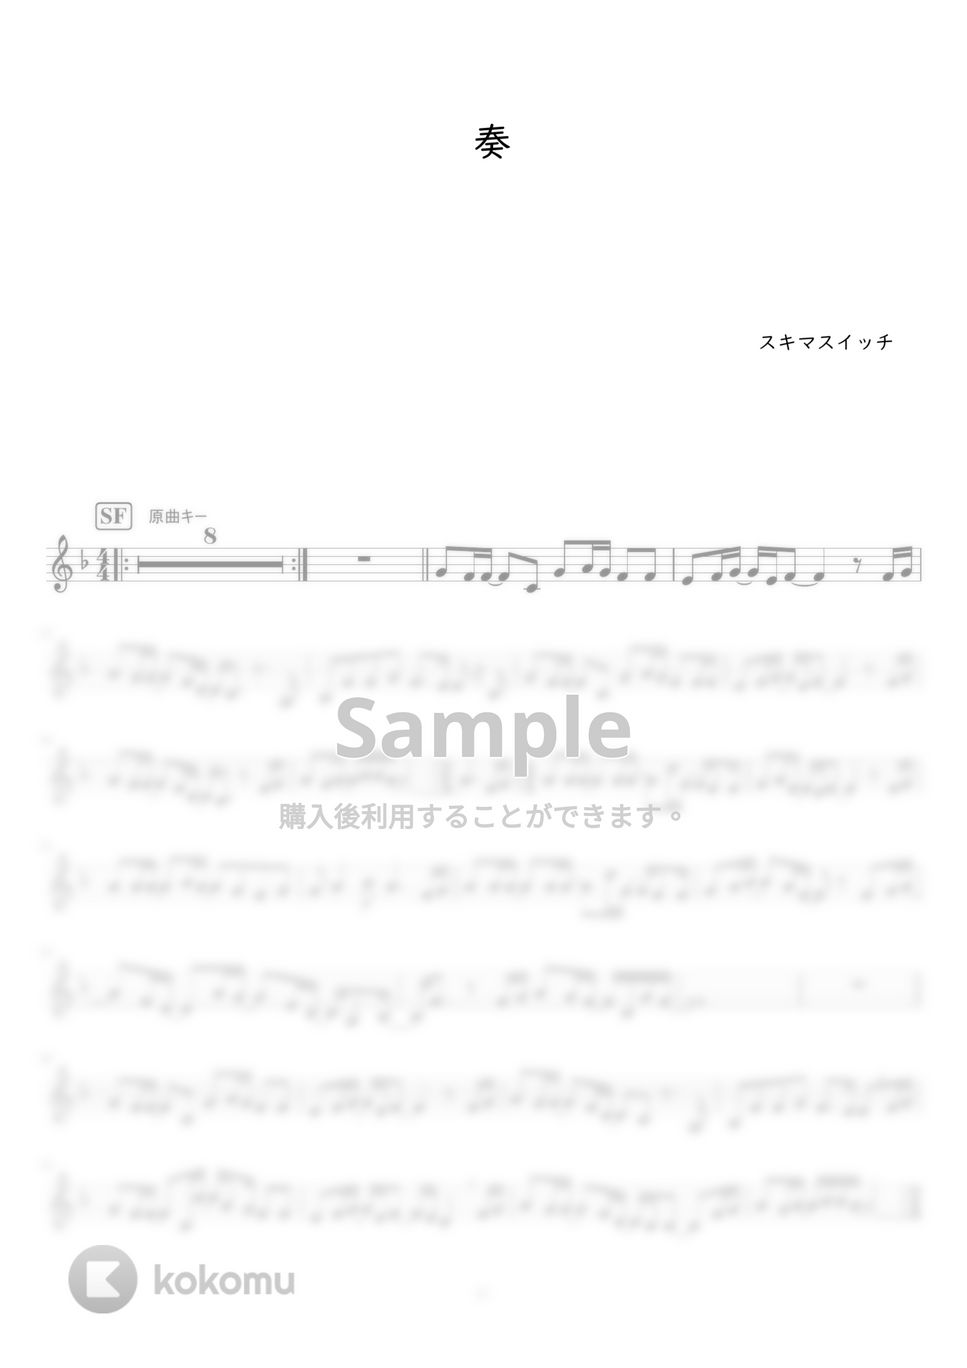 スキマスイッチ - 奏 (オカリナF管用メロディー譜) by もりたあいか